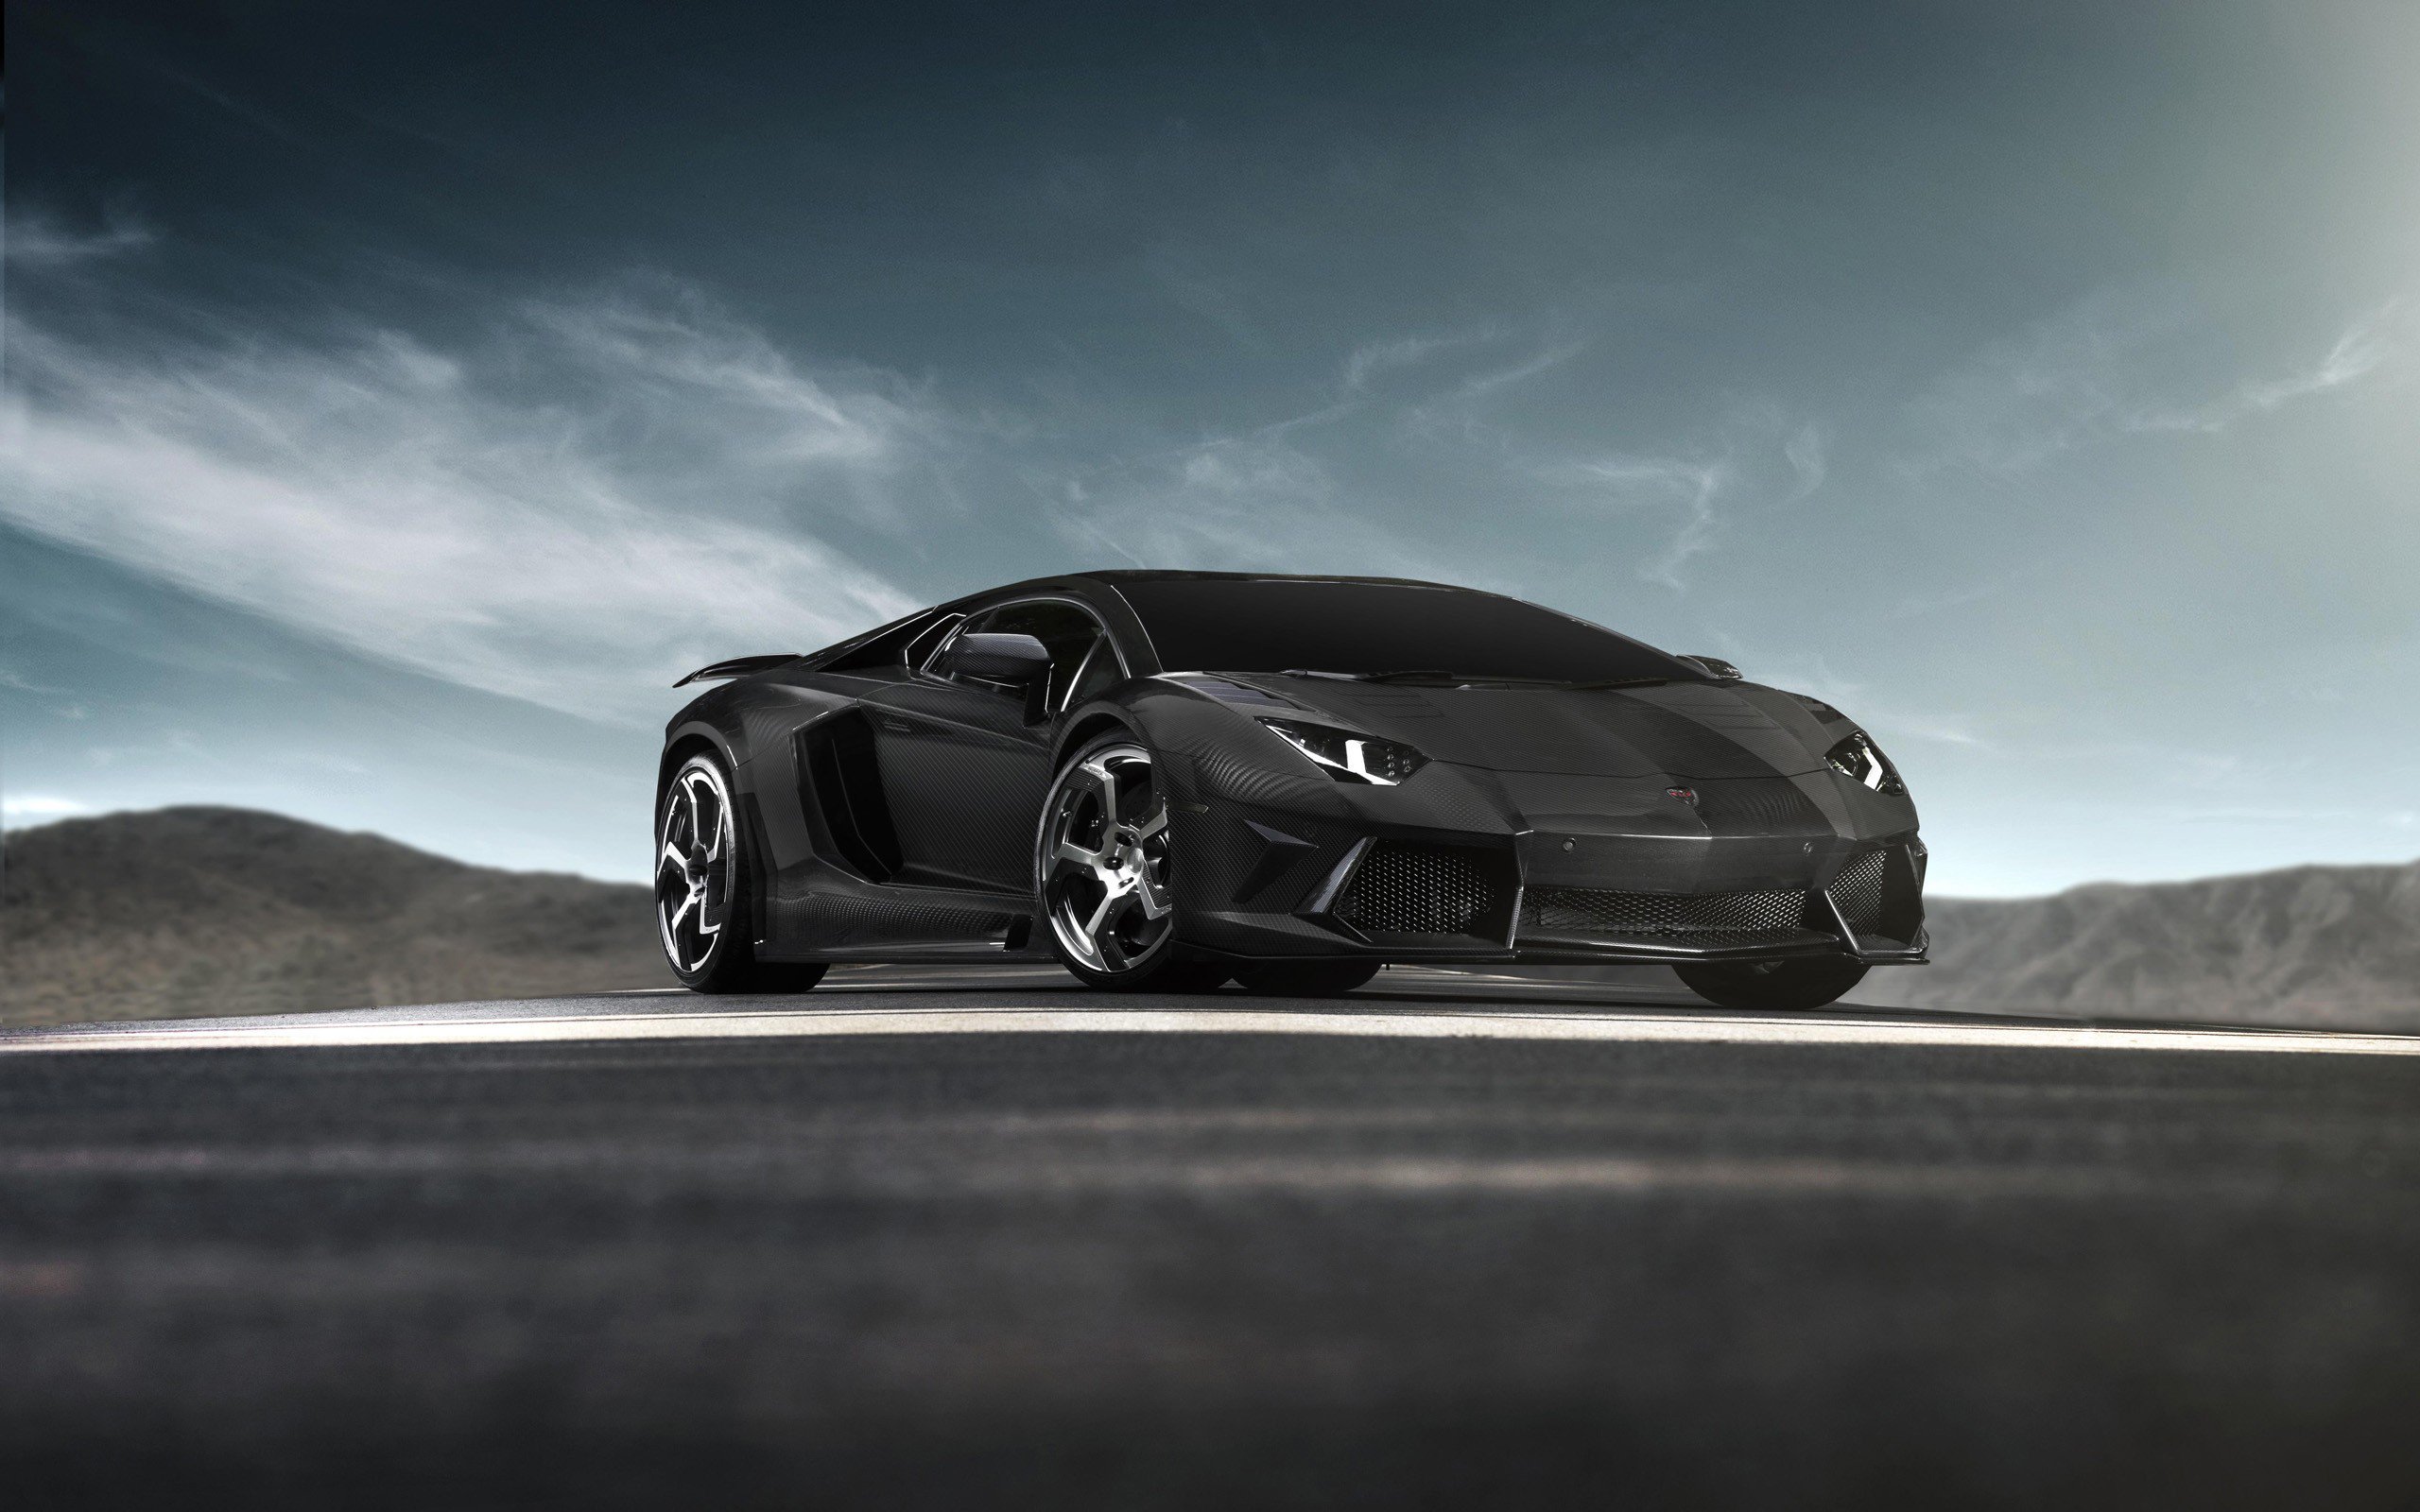 Wallpapers Lamborghini cars black on the desktop